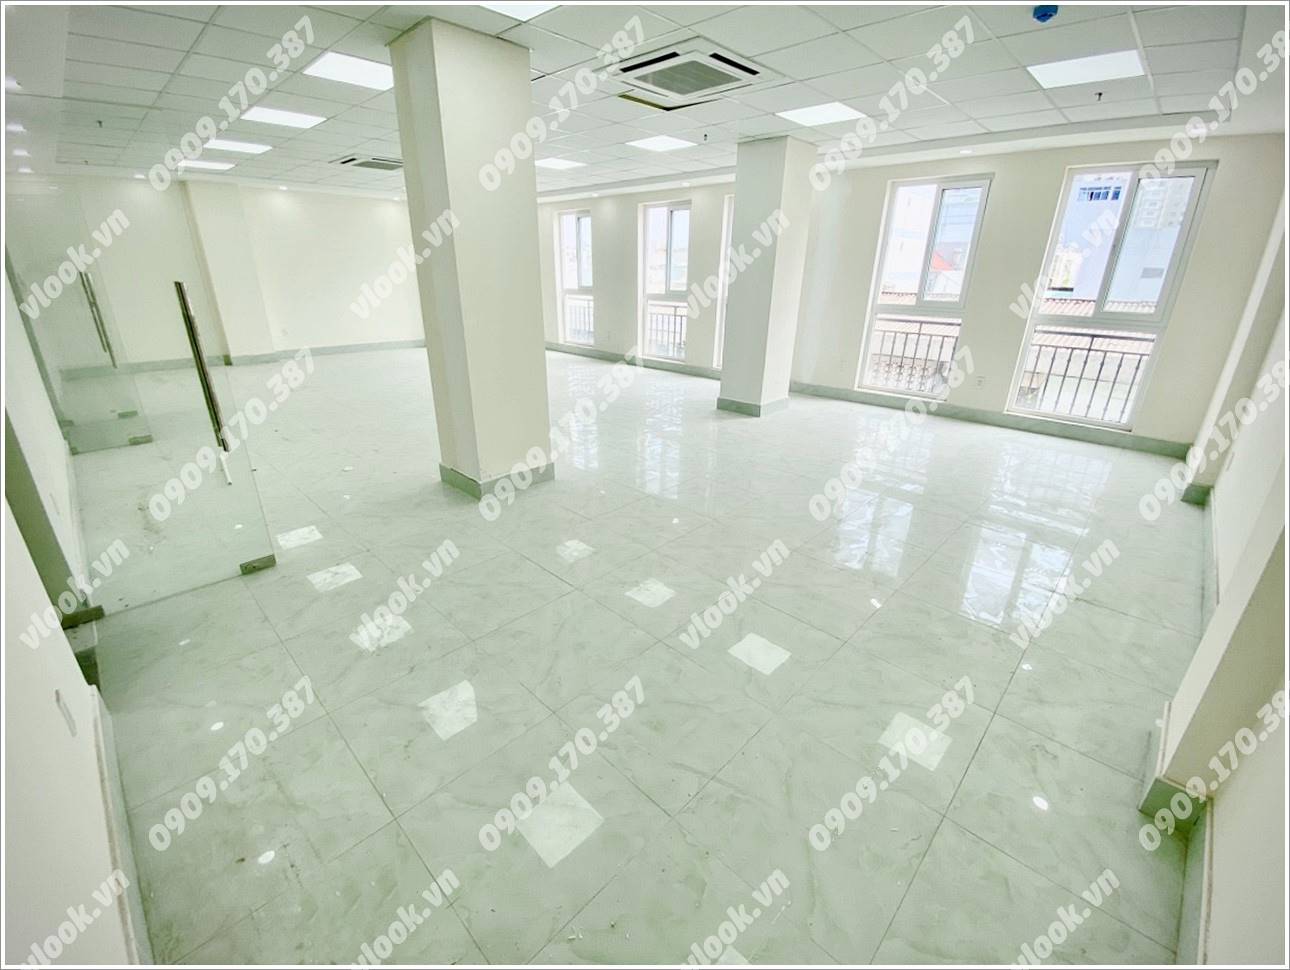 Cao ốc văn phòng cho thuê toà nhà Luxhome Building, Tân Cảng, Quận Bình Thạnh, TPHCM - vlook.vn